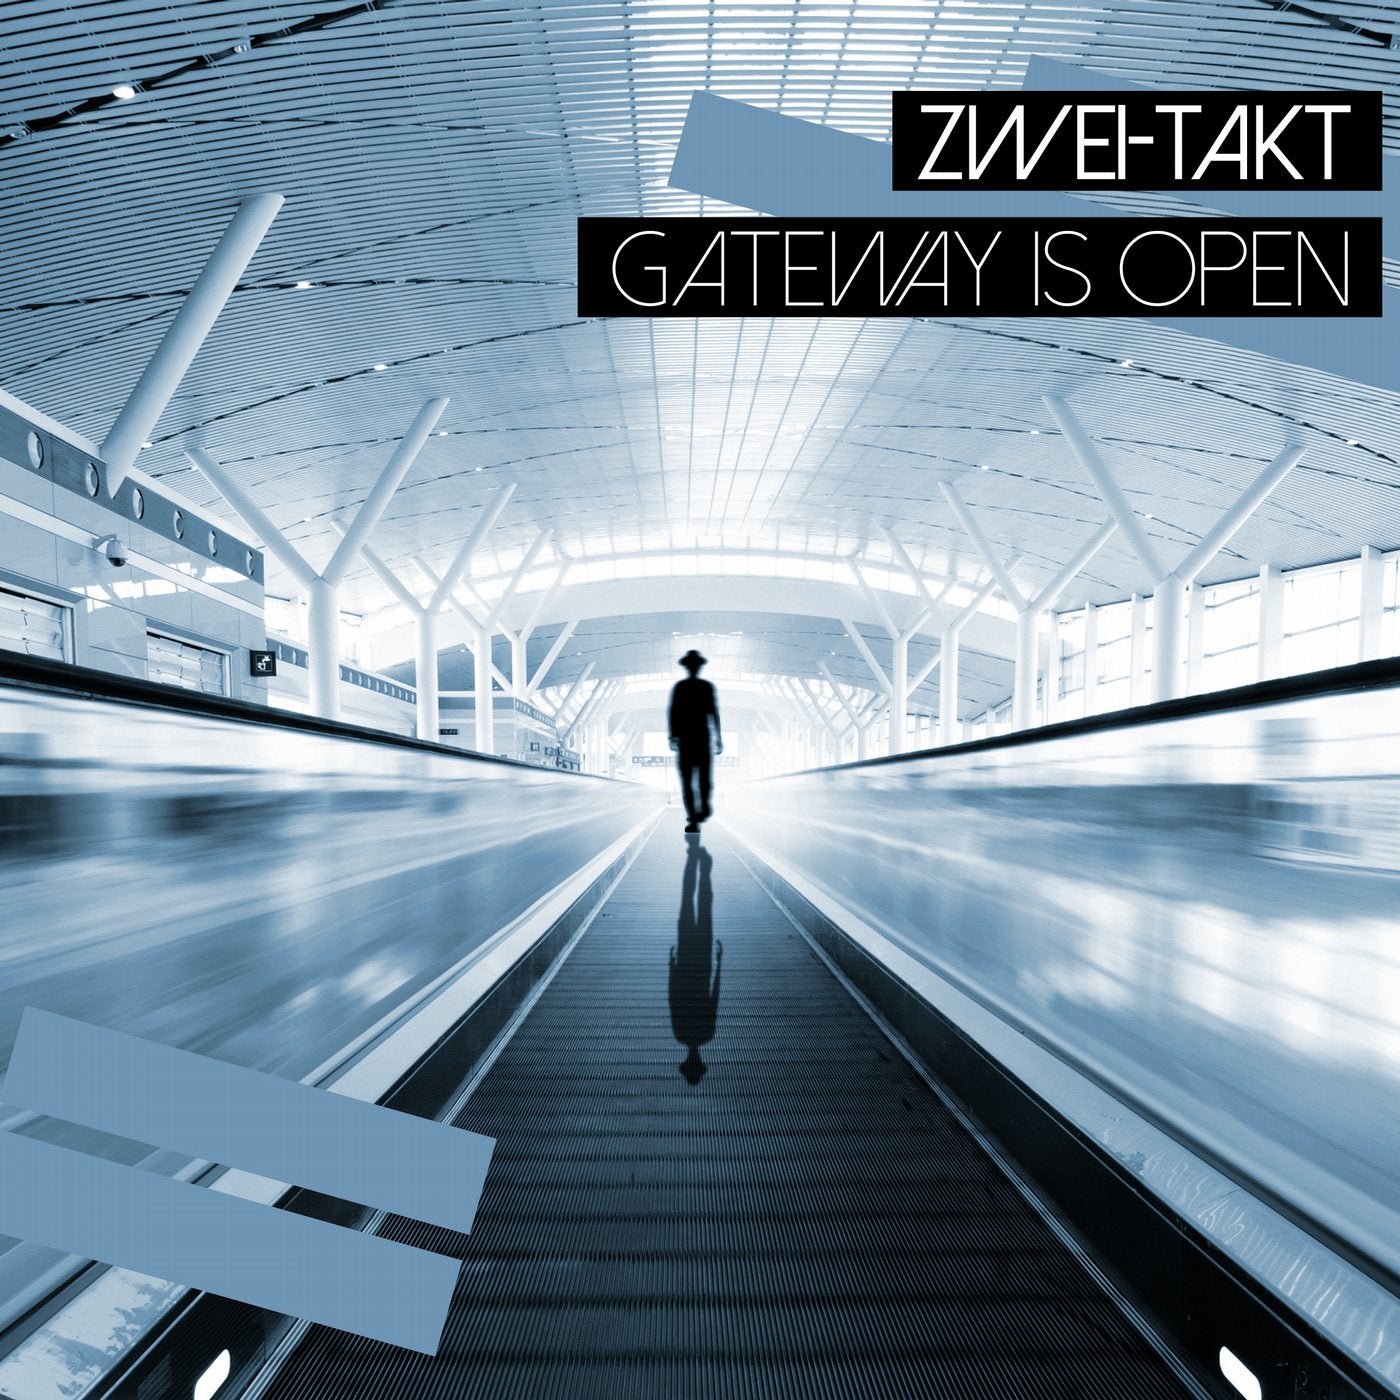 Gateway Is Open